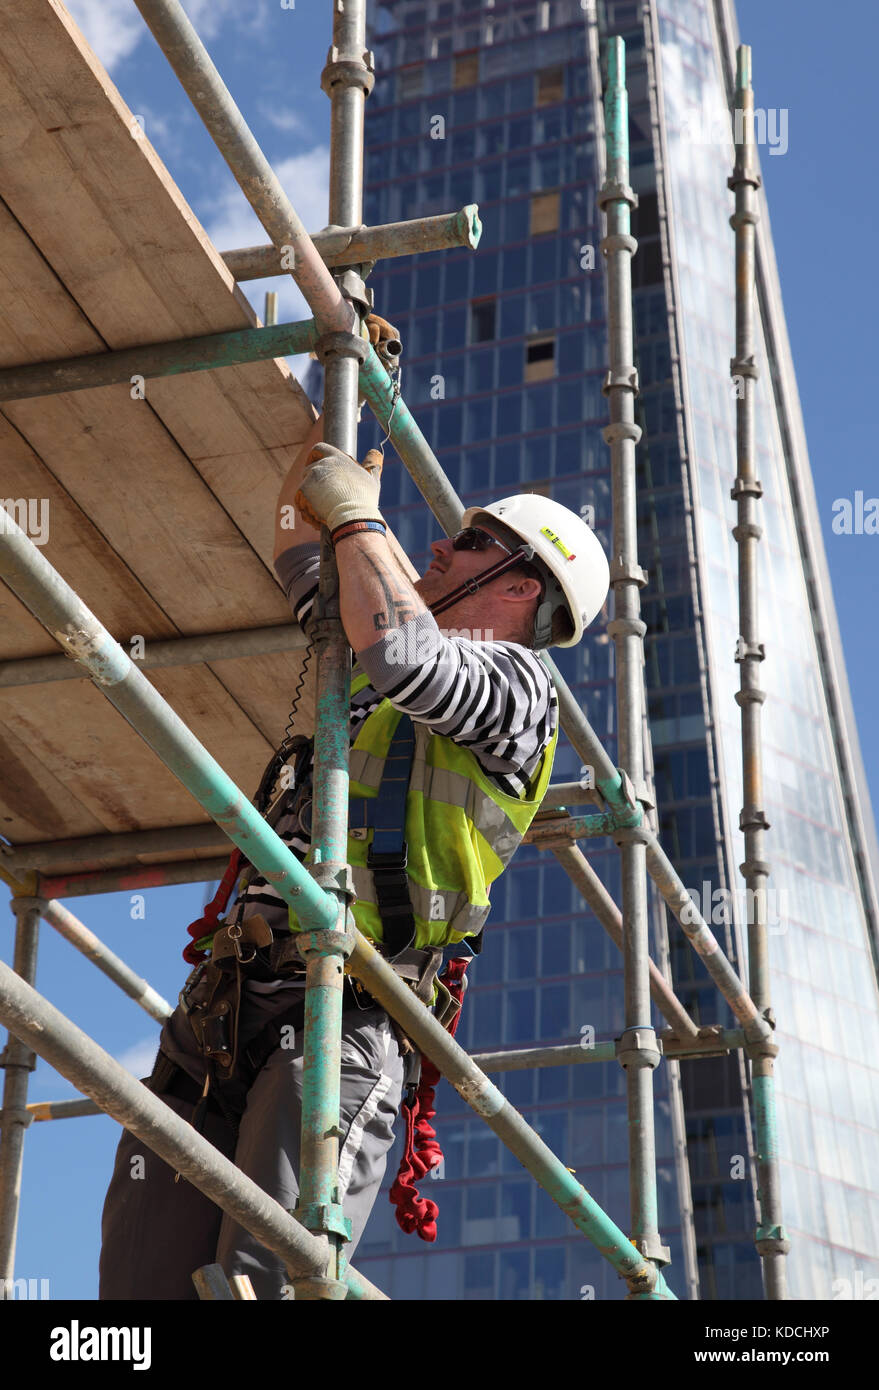 Ponteggiatore erige un lavoro temporaneo di piattaforma su un blocco a torre alto sopra di Londra. Mostra cablaggio di sicurezza nell'uso. La Shard è in background. Foto Stock